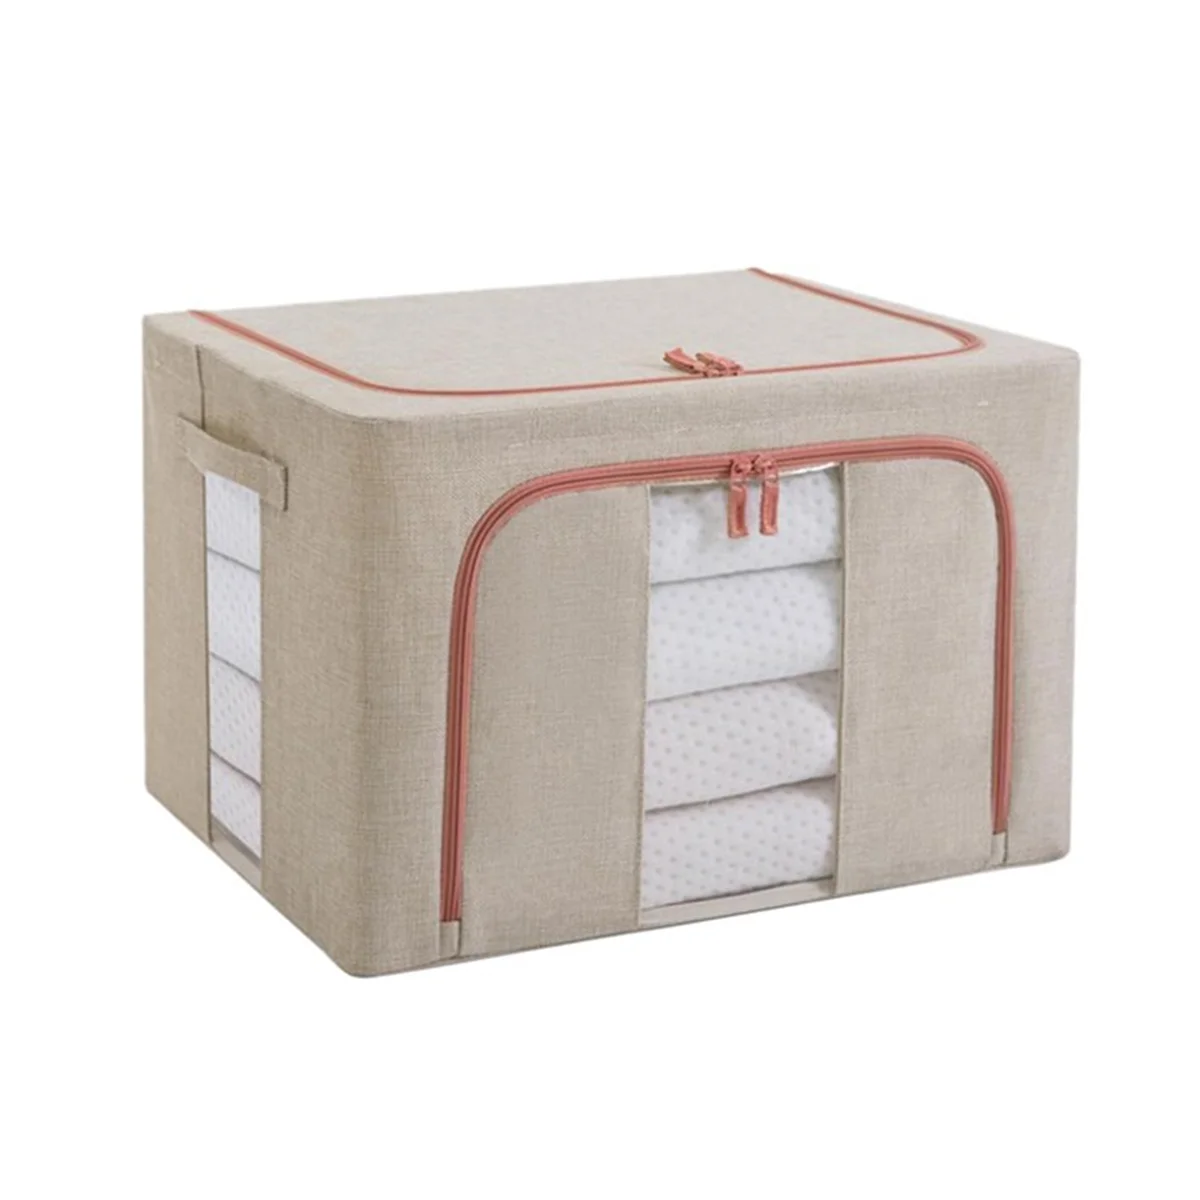 

Моющаяся коробка для хранения из хлопка и льна с крышкой, складной органайзер для одежды, носков, игрушек, мелочей, косметики бежевого цвета